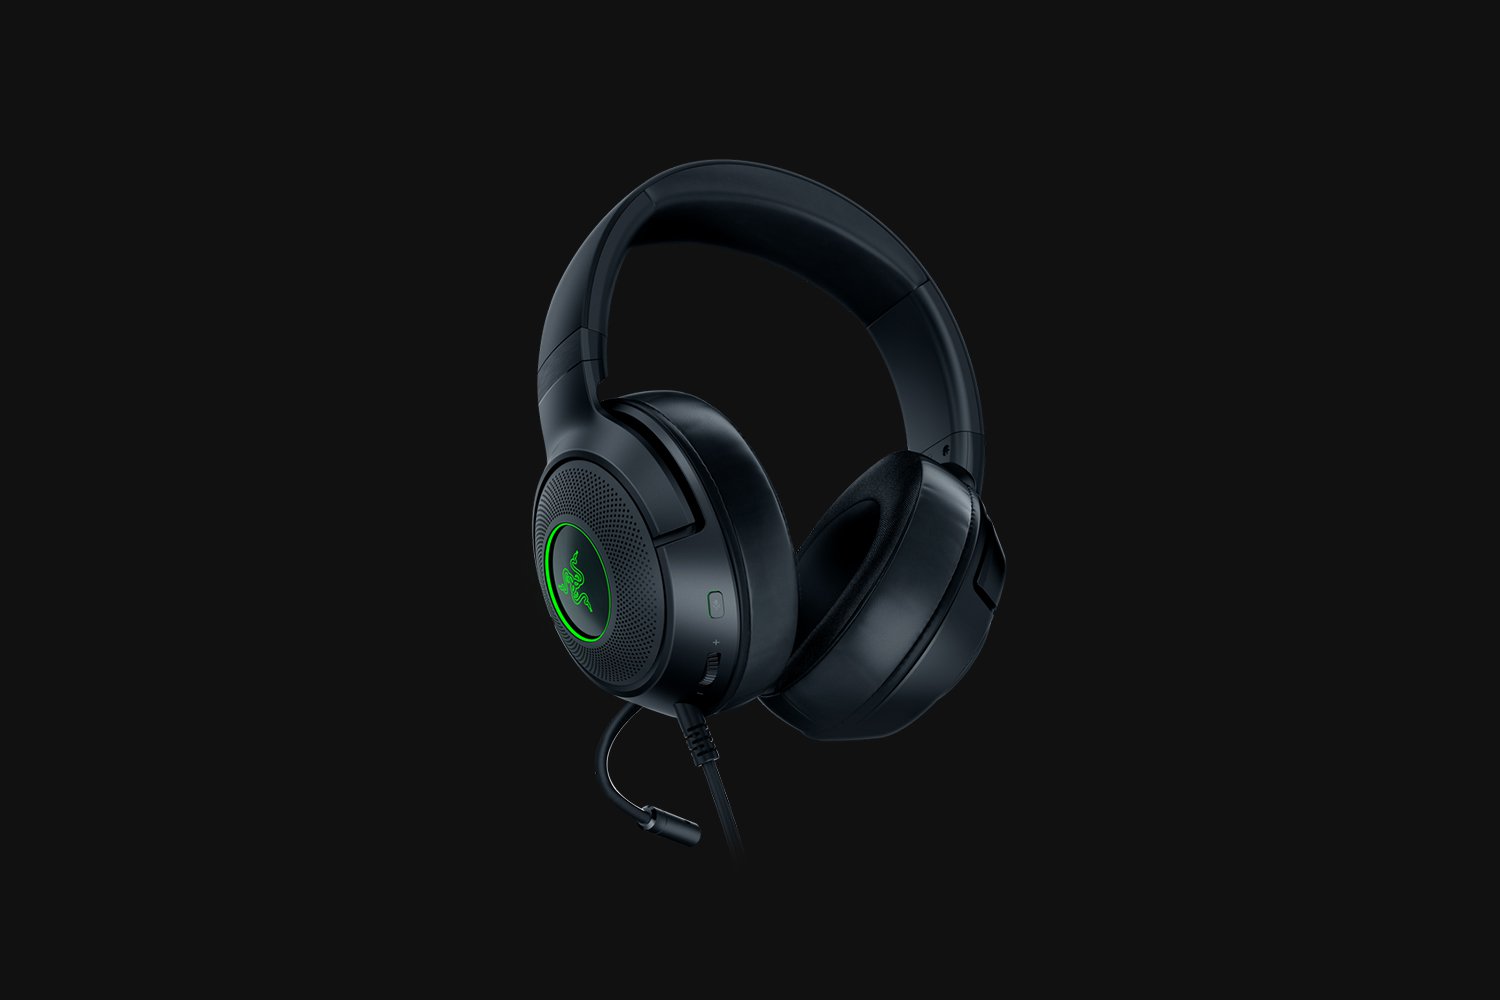 Razer Kraken V3 X Wired Over-Ear Gaming Headset for sale online